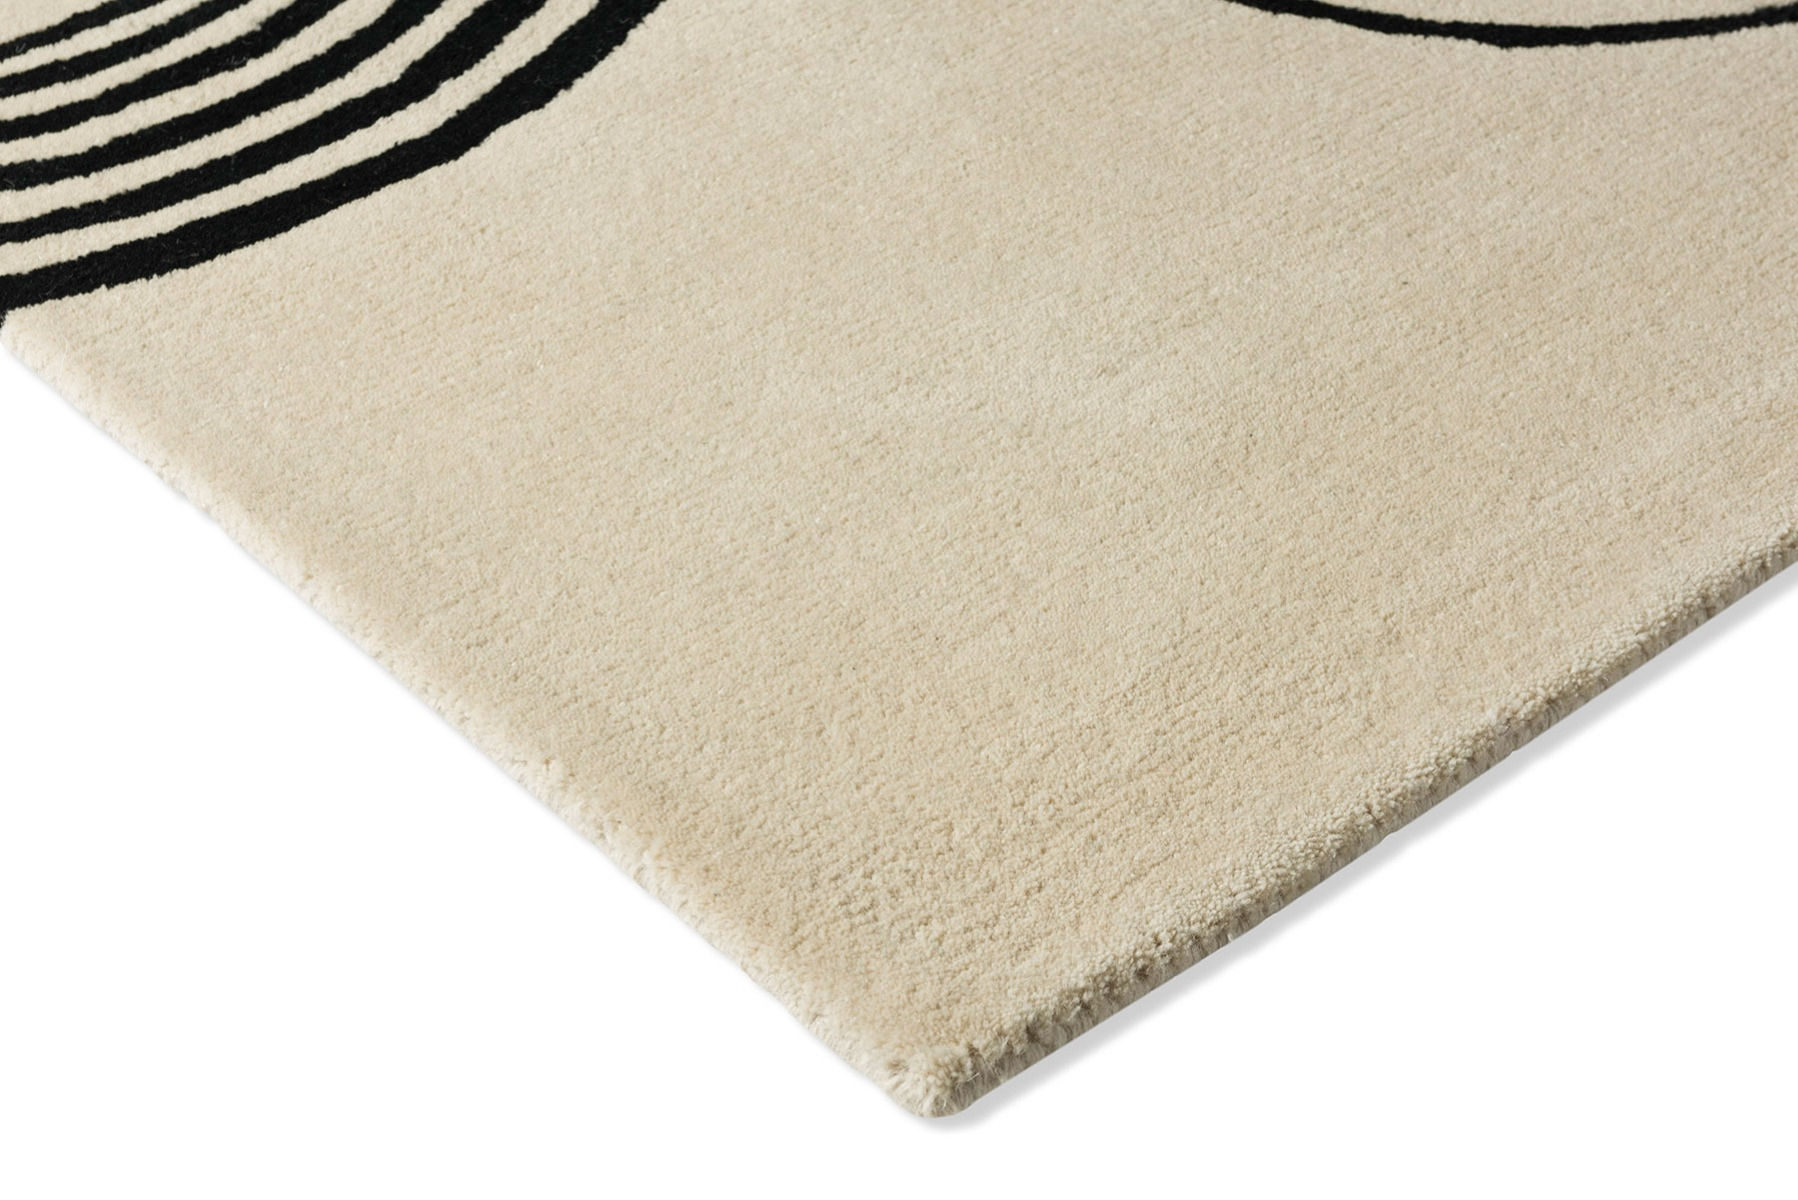 Decor Flow Soft Sand Handwoven Rug ☞ Size: 6' 7" x 9' 2" (200 x 280 cm)